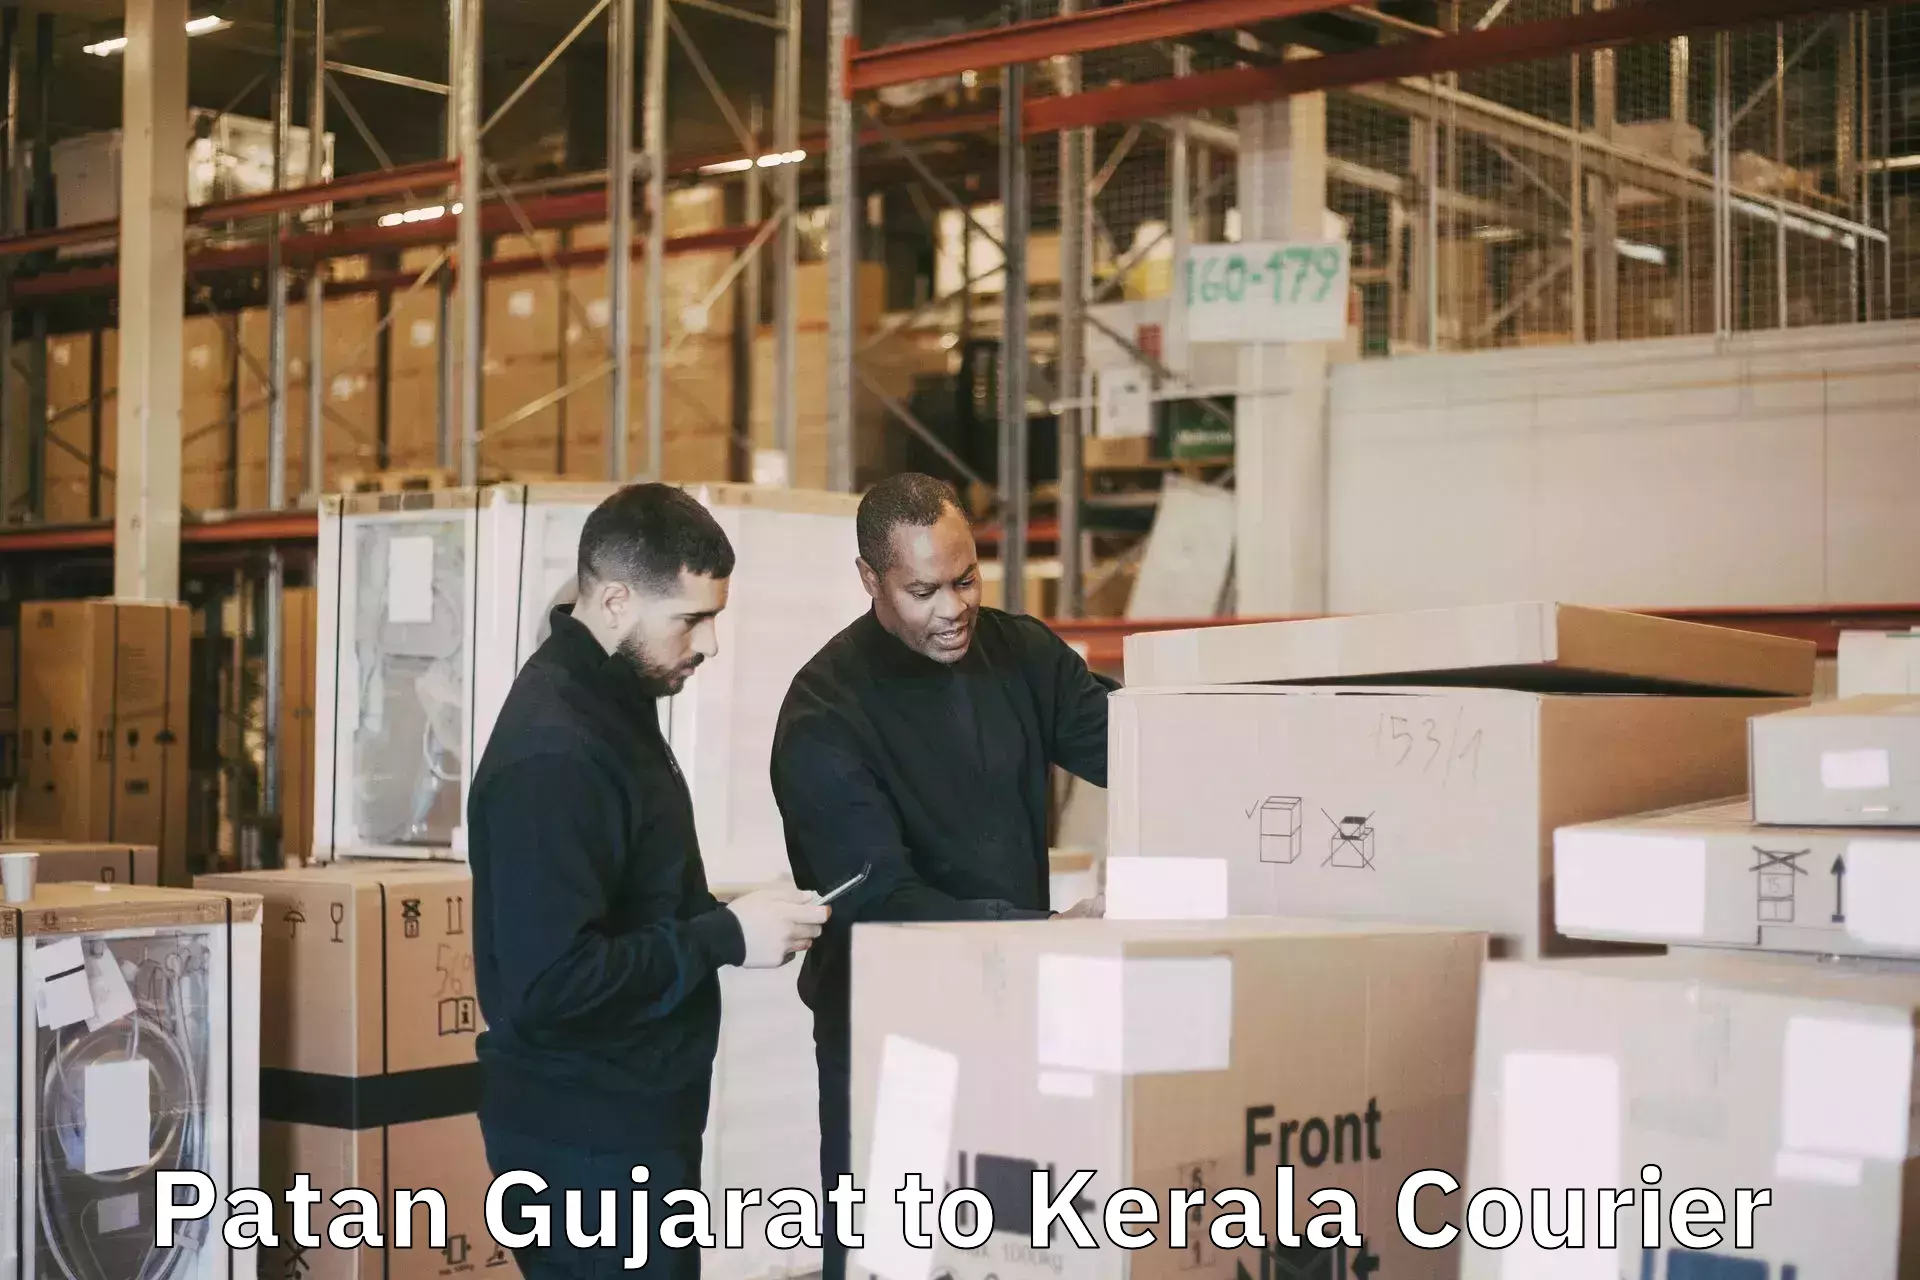 Luggage shipment tracking in Patan Gujarat to Kochi